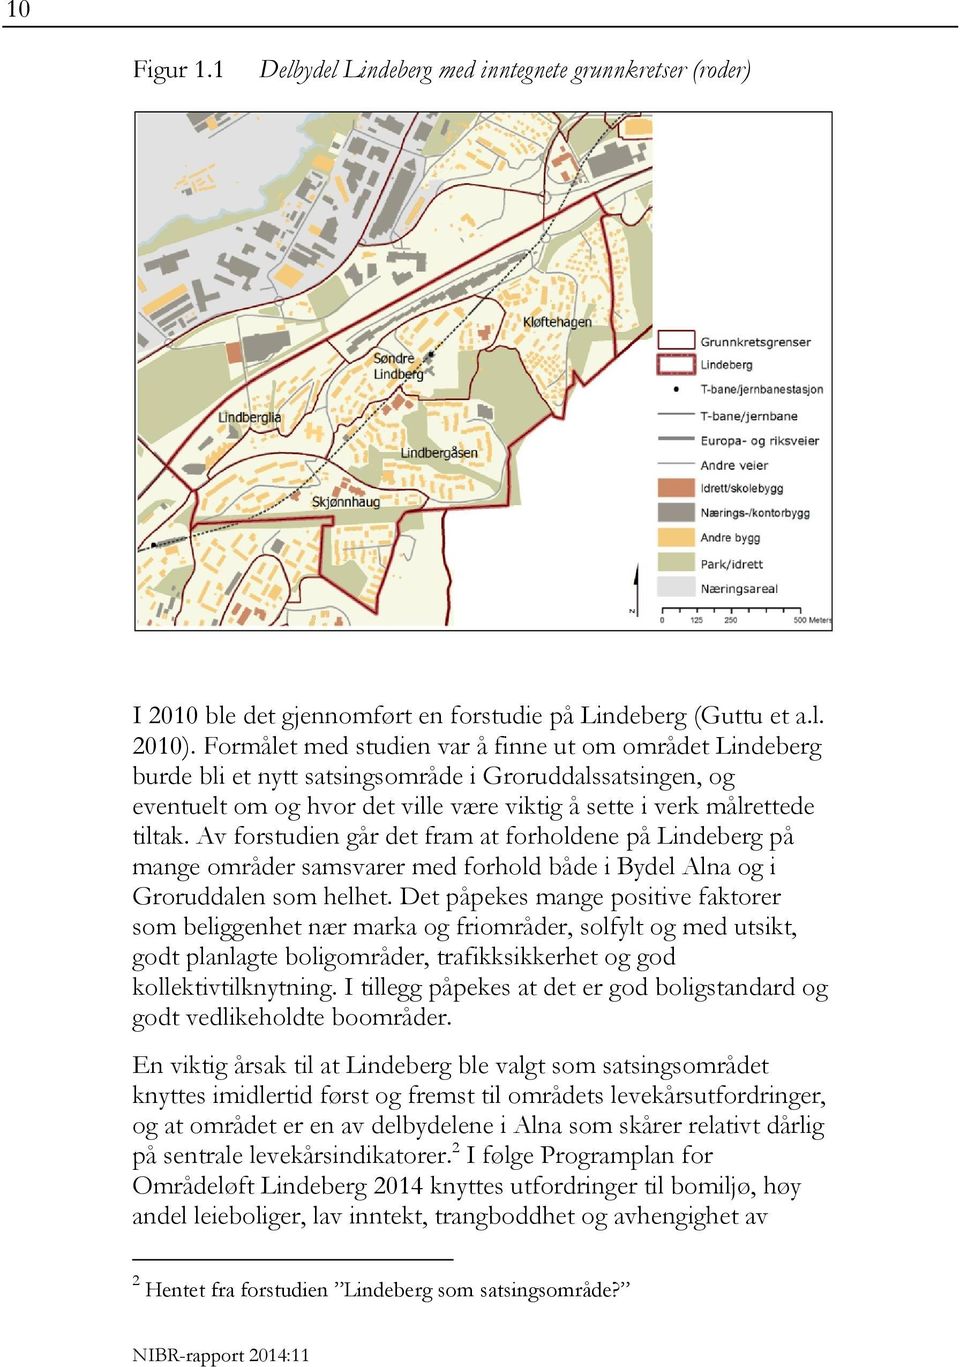 Av forstudien går det fram at forholdene på Lindeberg på mange områder samsvarer med forhold både i Bydel Alna og i Groruddalen som helhet.